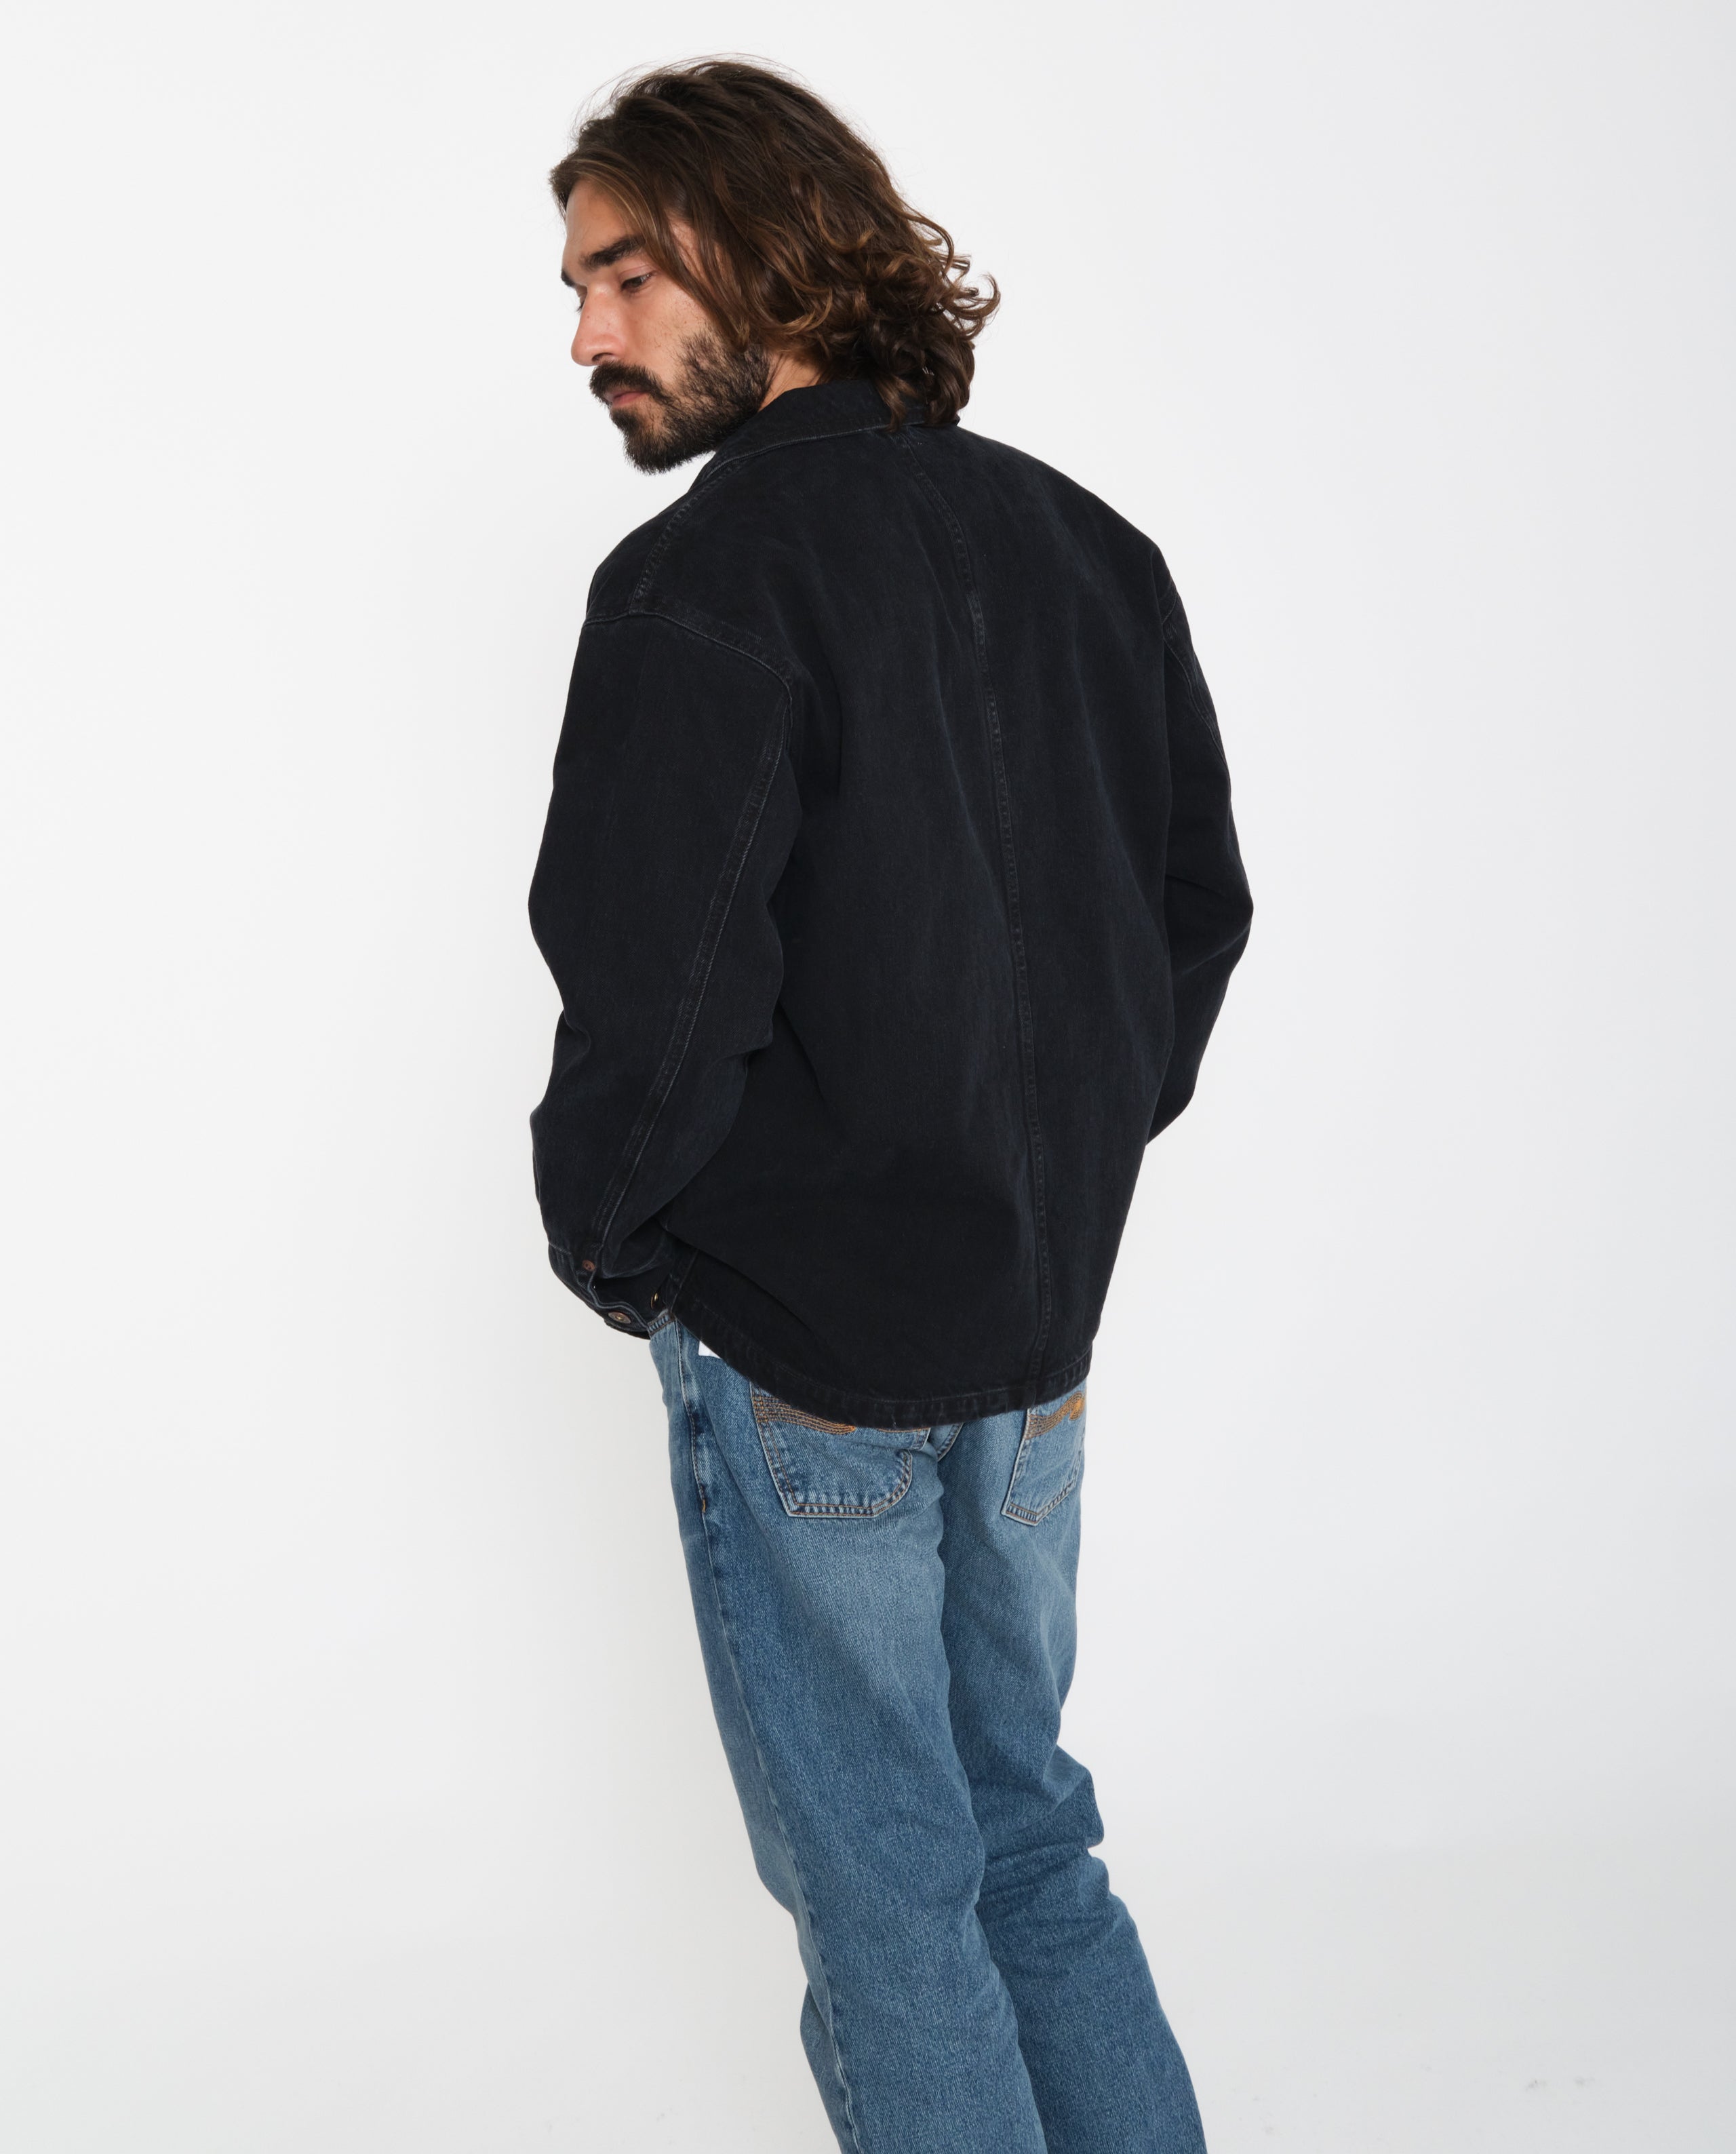 marché commun nudie jeans veste carson denim noir coton biologique homme eco-responsable